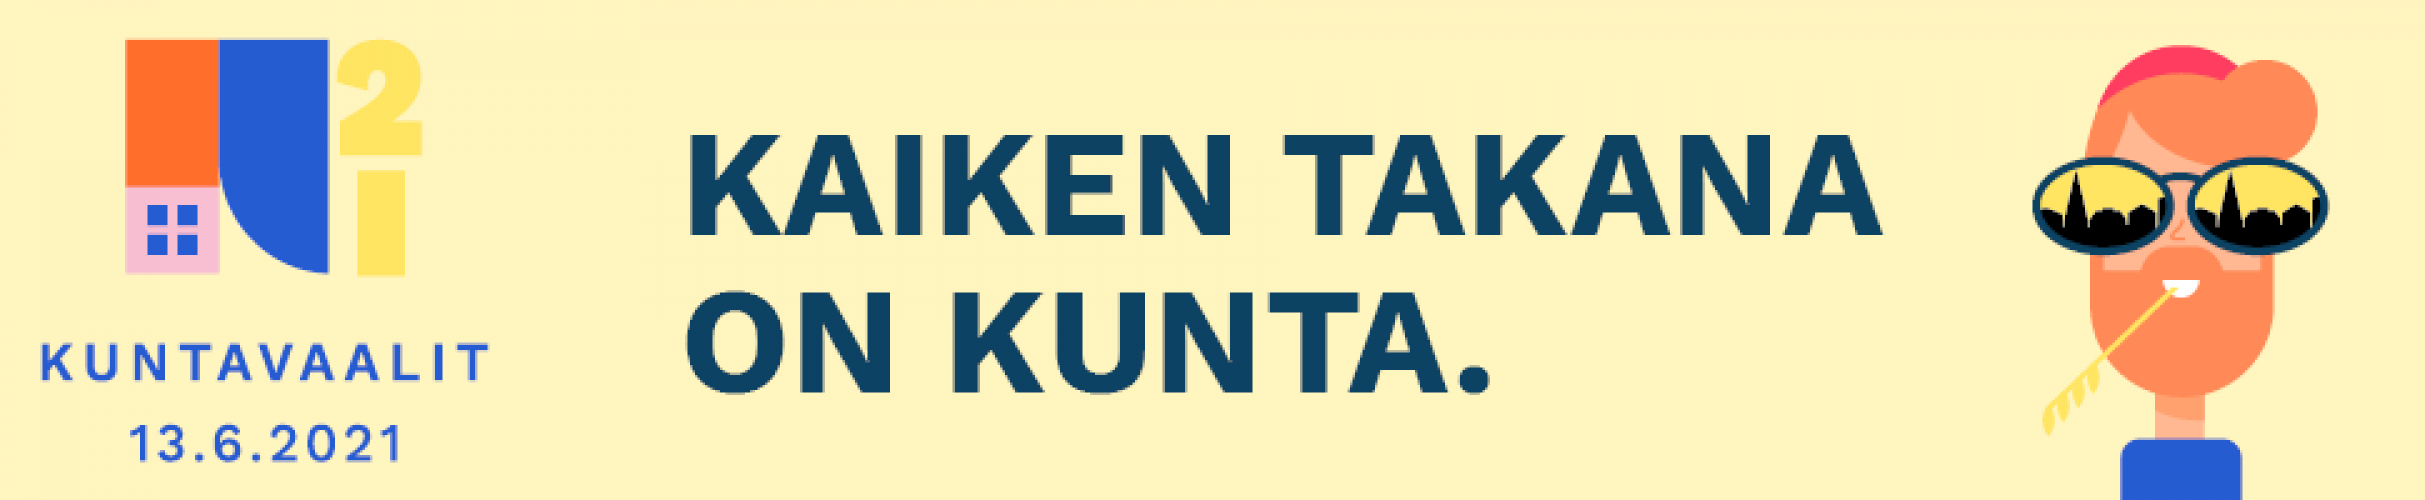 Kommunalvalets logo, med finsk text.